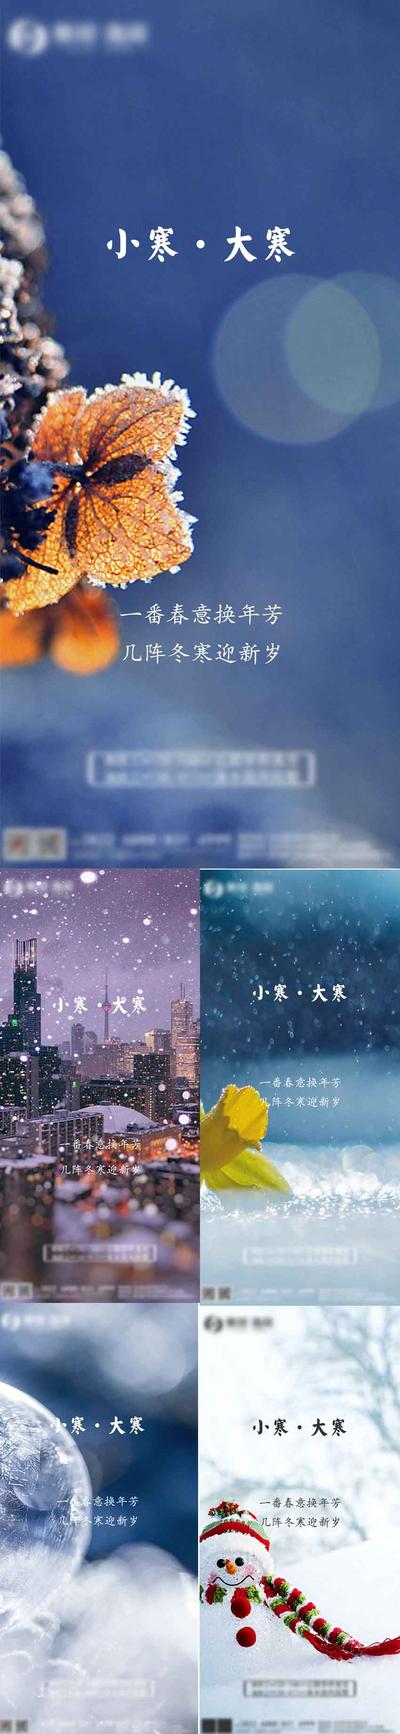 南门网 海报 二十四节气 小寒 大寒 冬天 下雪 雪人 系列